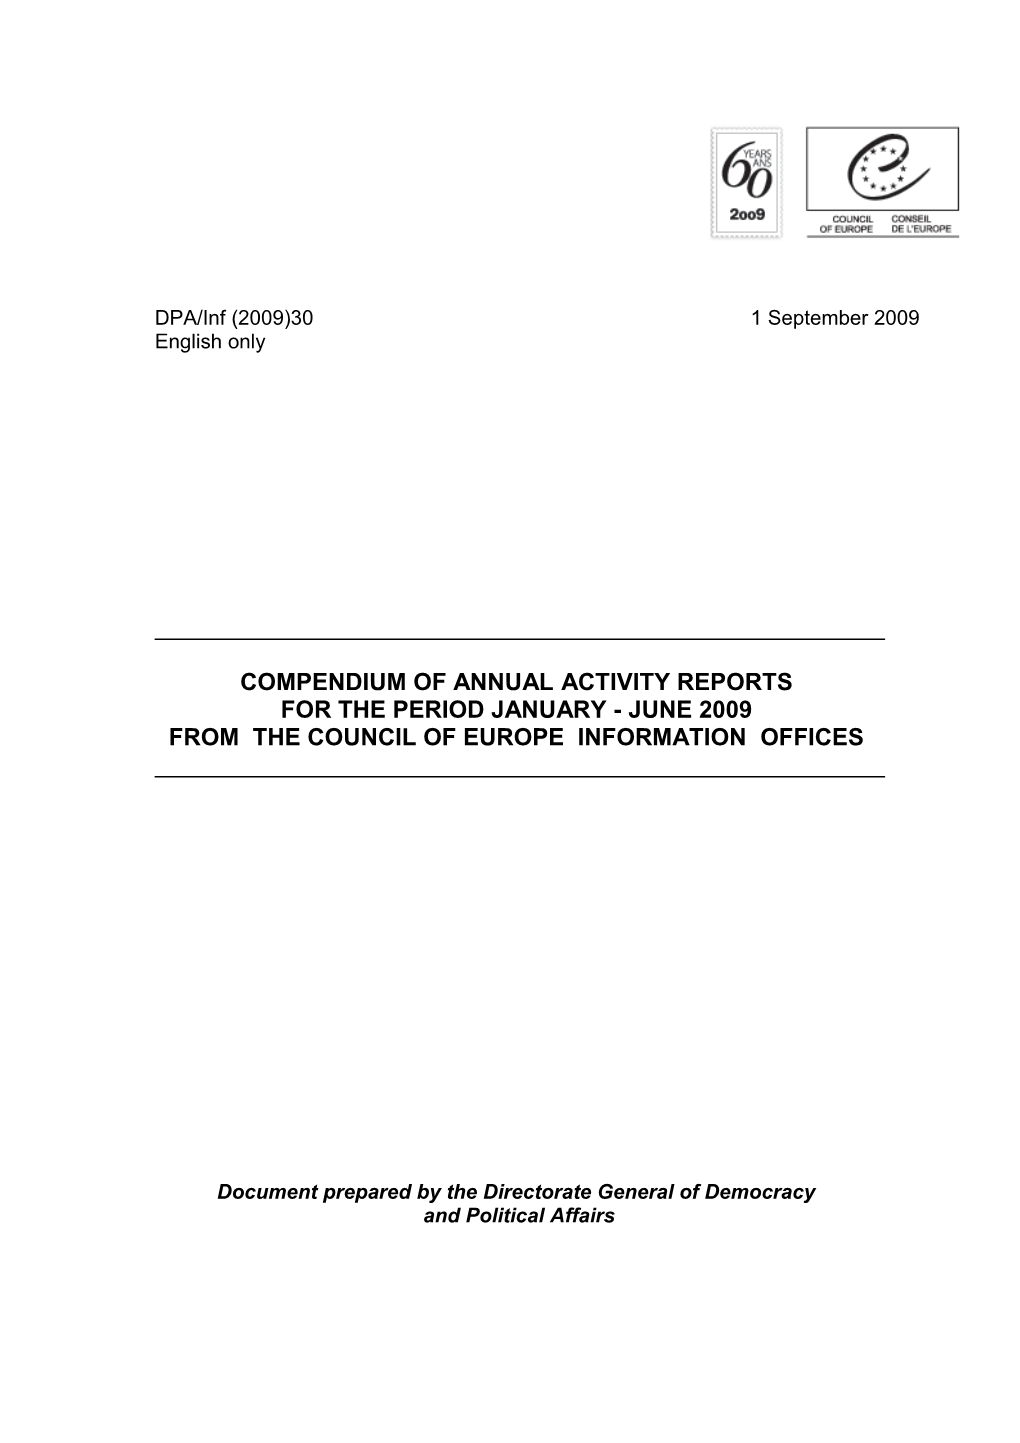 Compendium of Annual Activity Reports